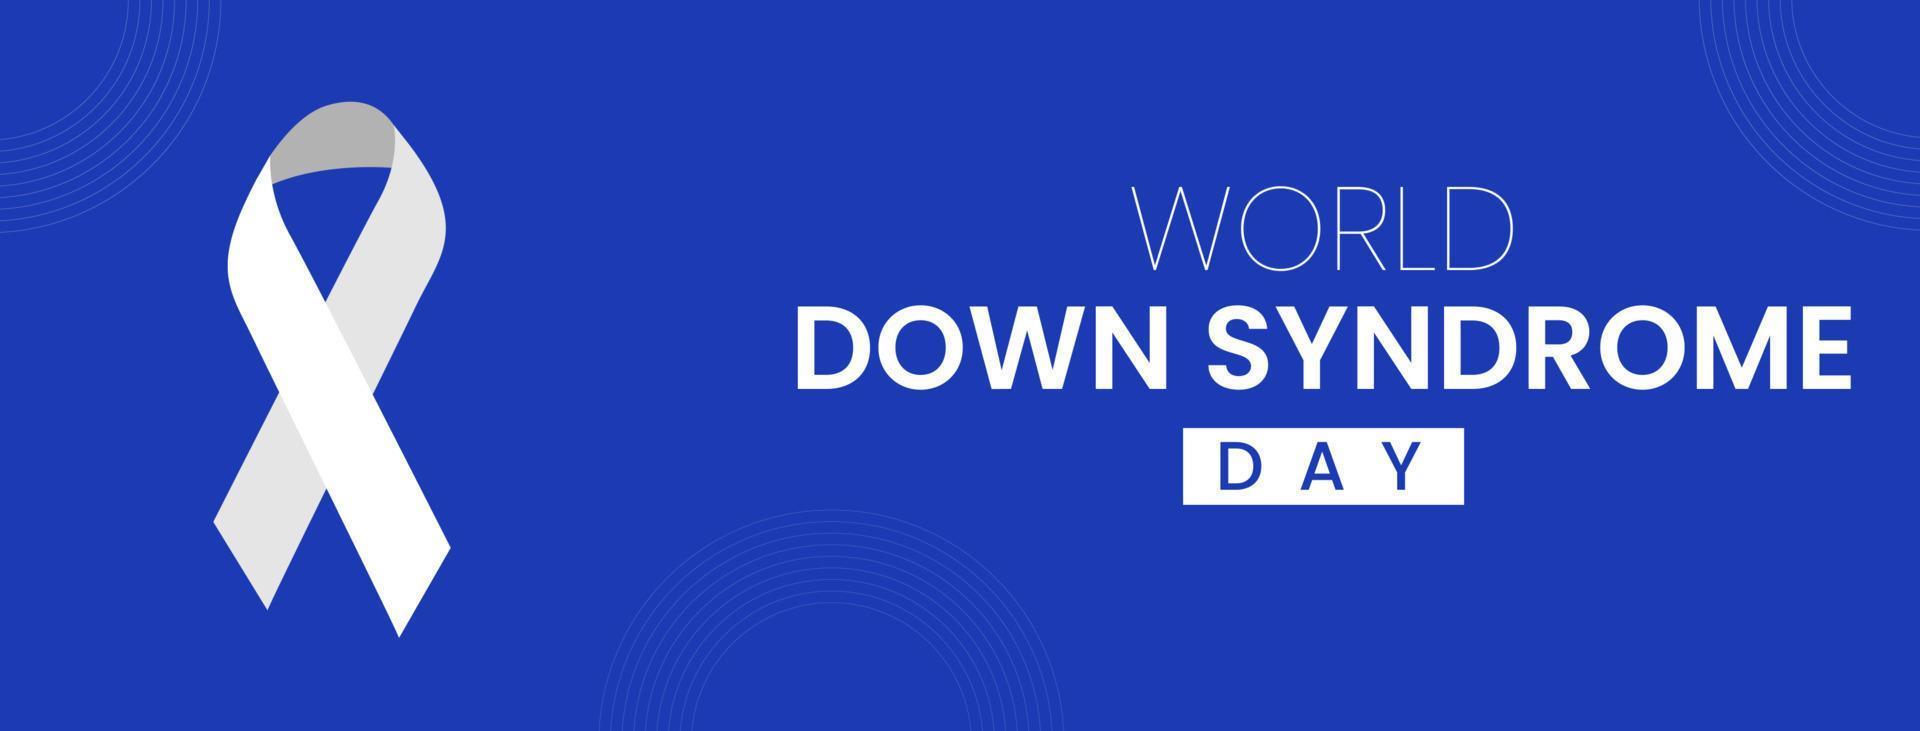 World down syndrome day inlägg på sociala medier vektor